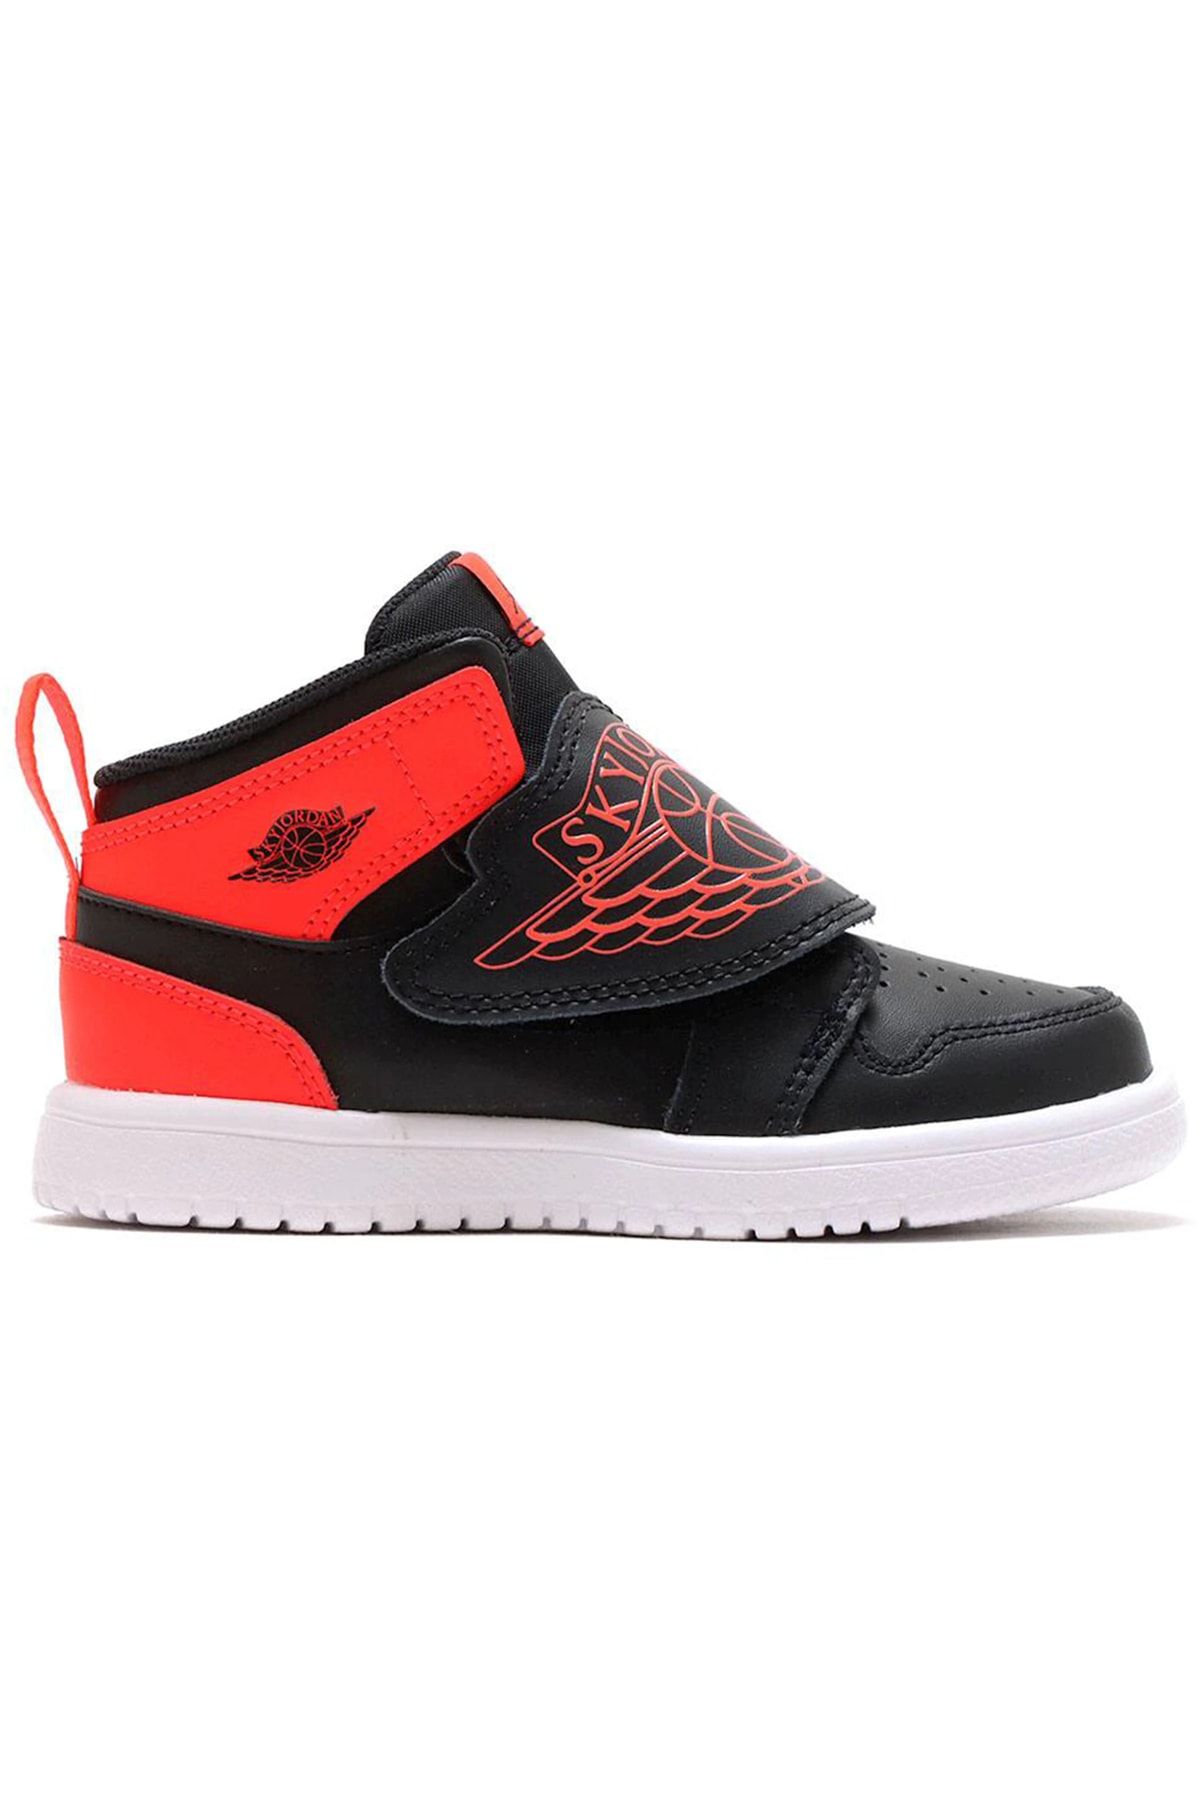 Nike Sky Jordan 1 Black Infrared 23 (td)